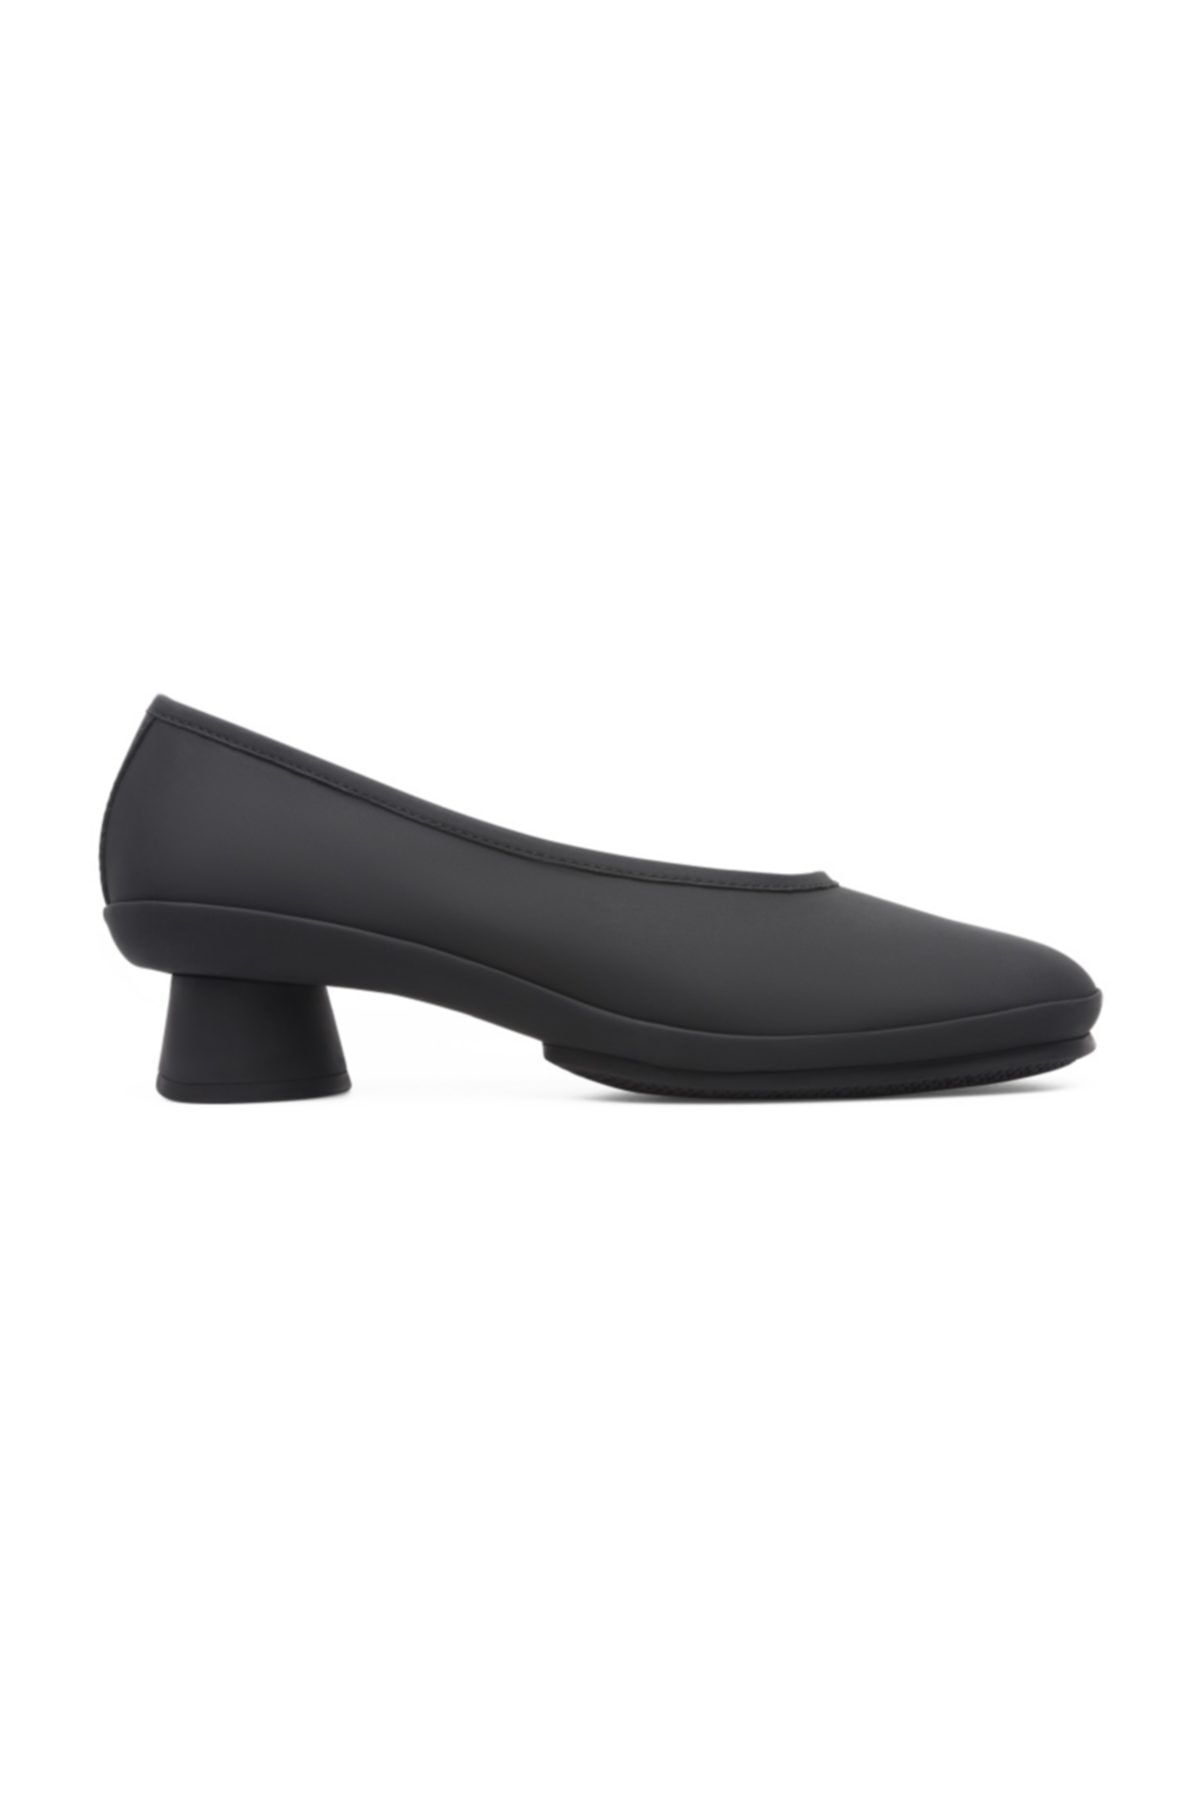 CAMPER Kadın Siyah Soft Klasik Topuklu Ayakkabı K200607-009